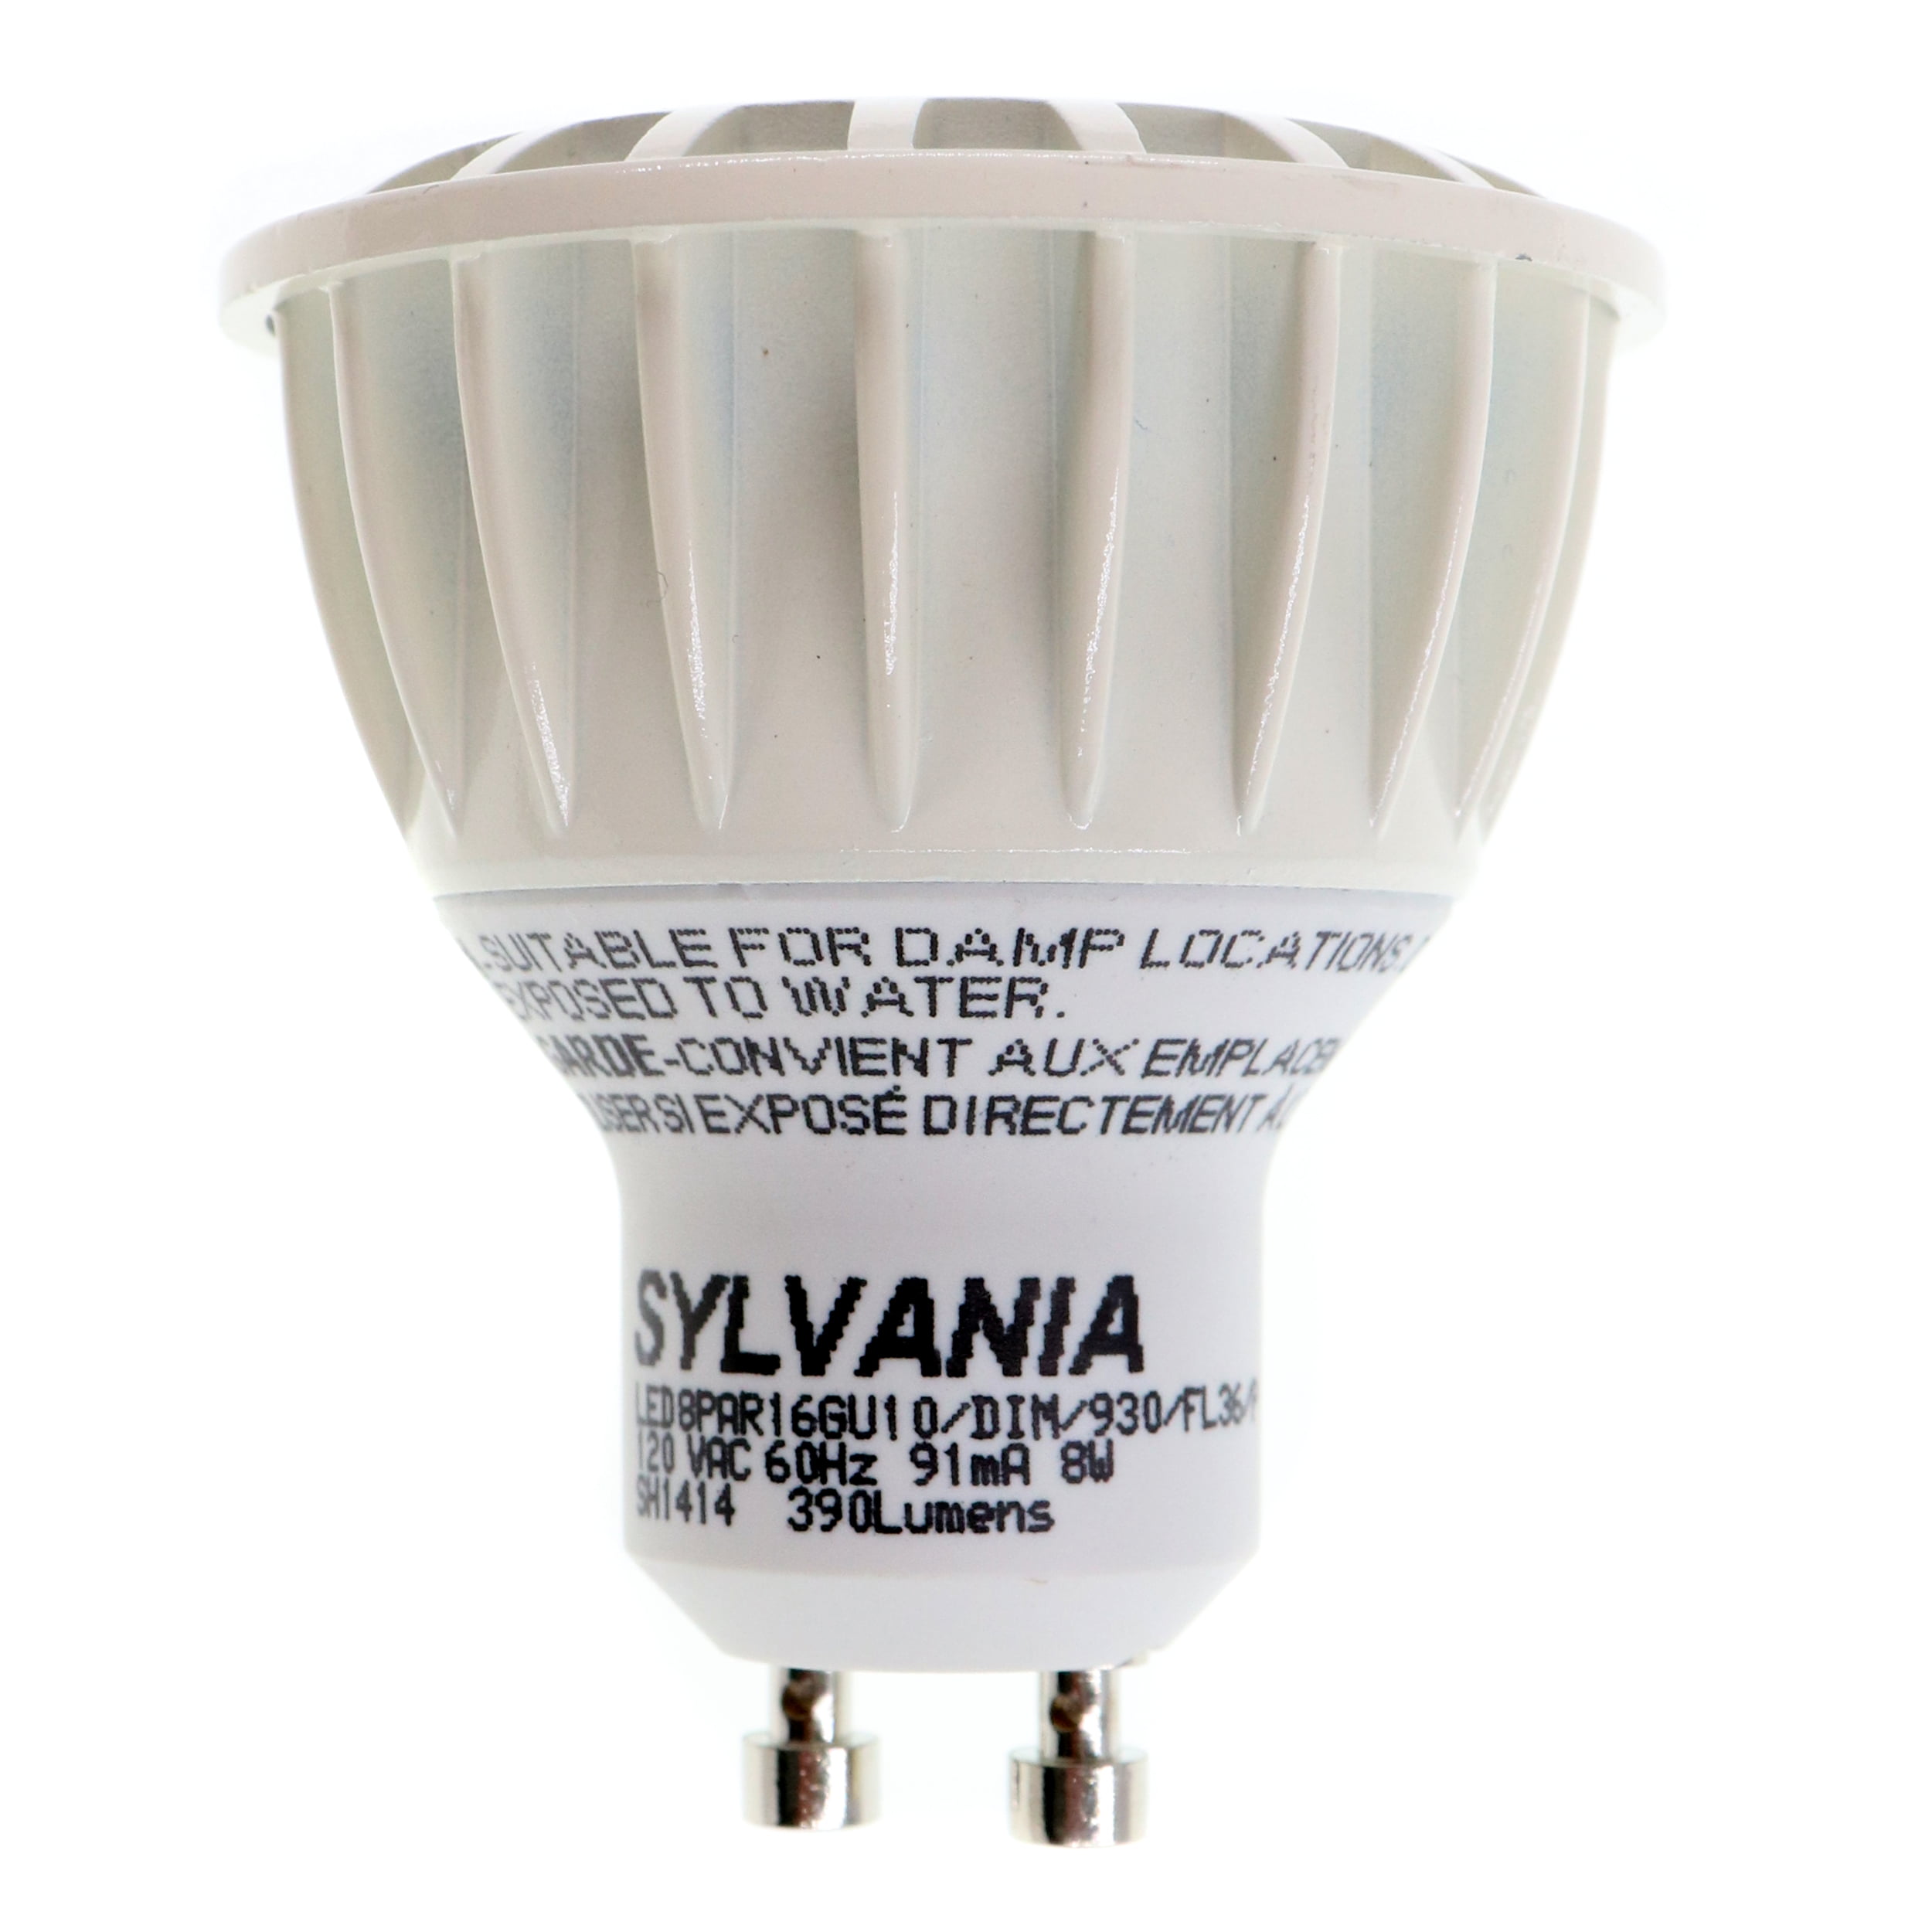 Sylvania 72537 LED8PAR16/GU10/DIM/930/FL36/P/LW PAR16 LED Flood Light Bulb,  GU10, 3000K